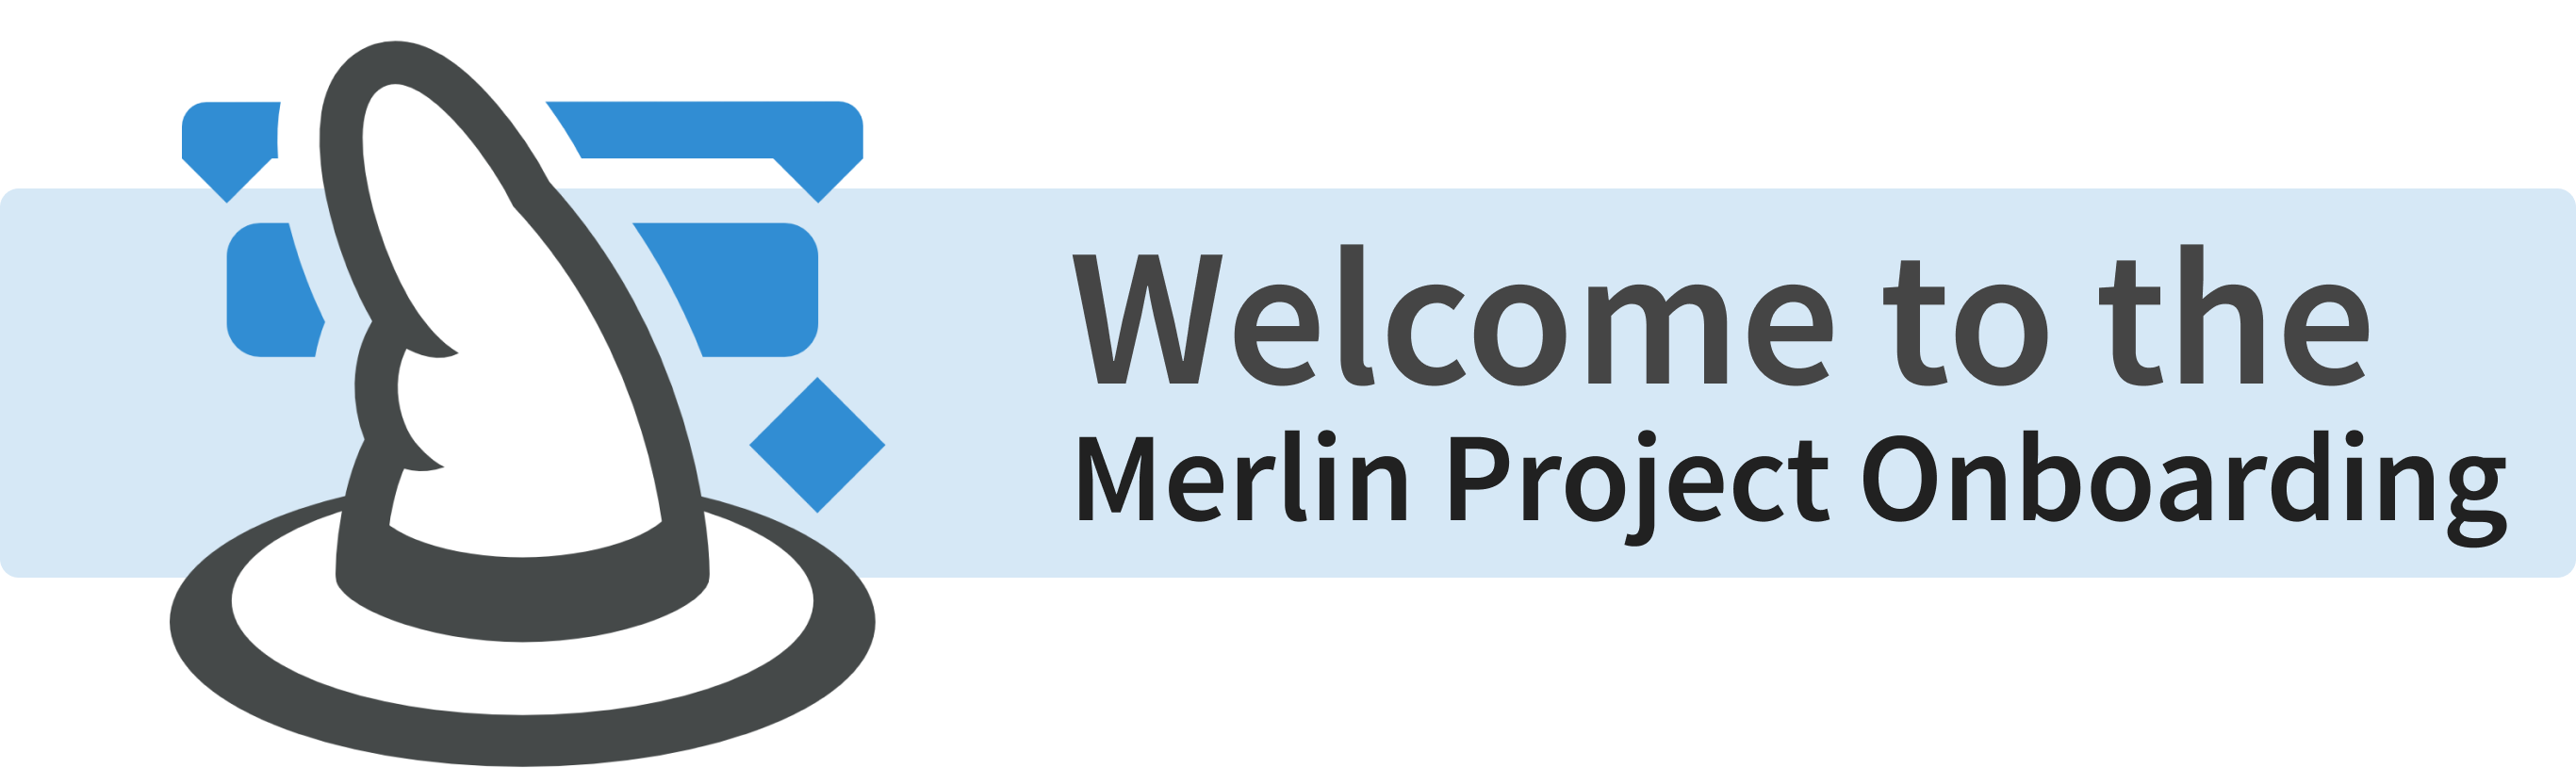 Merlin Project Onboarding